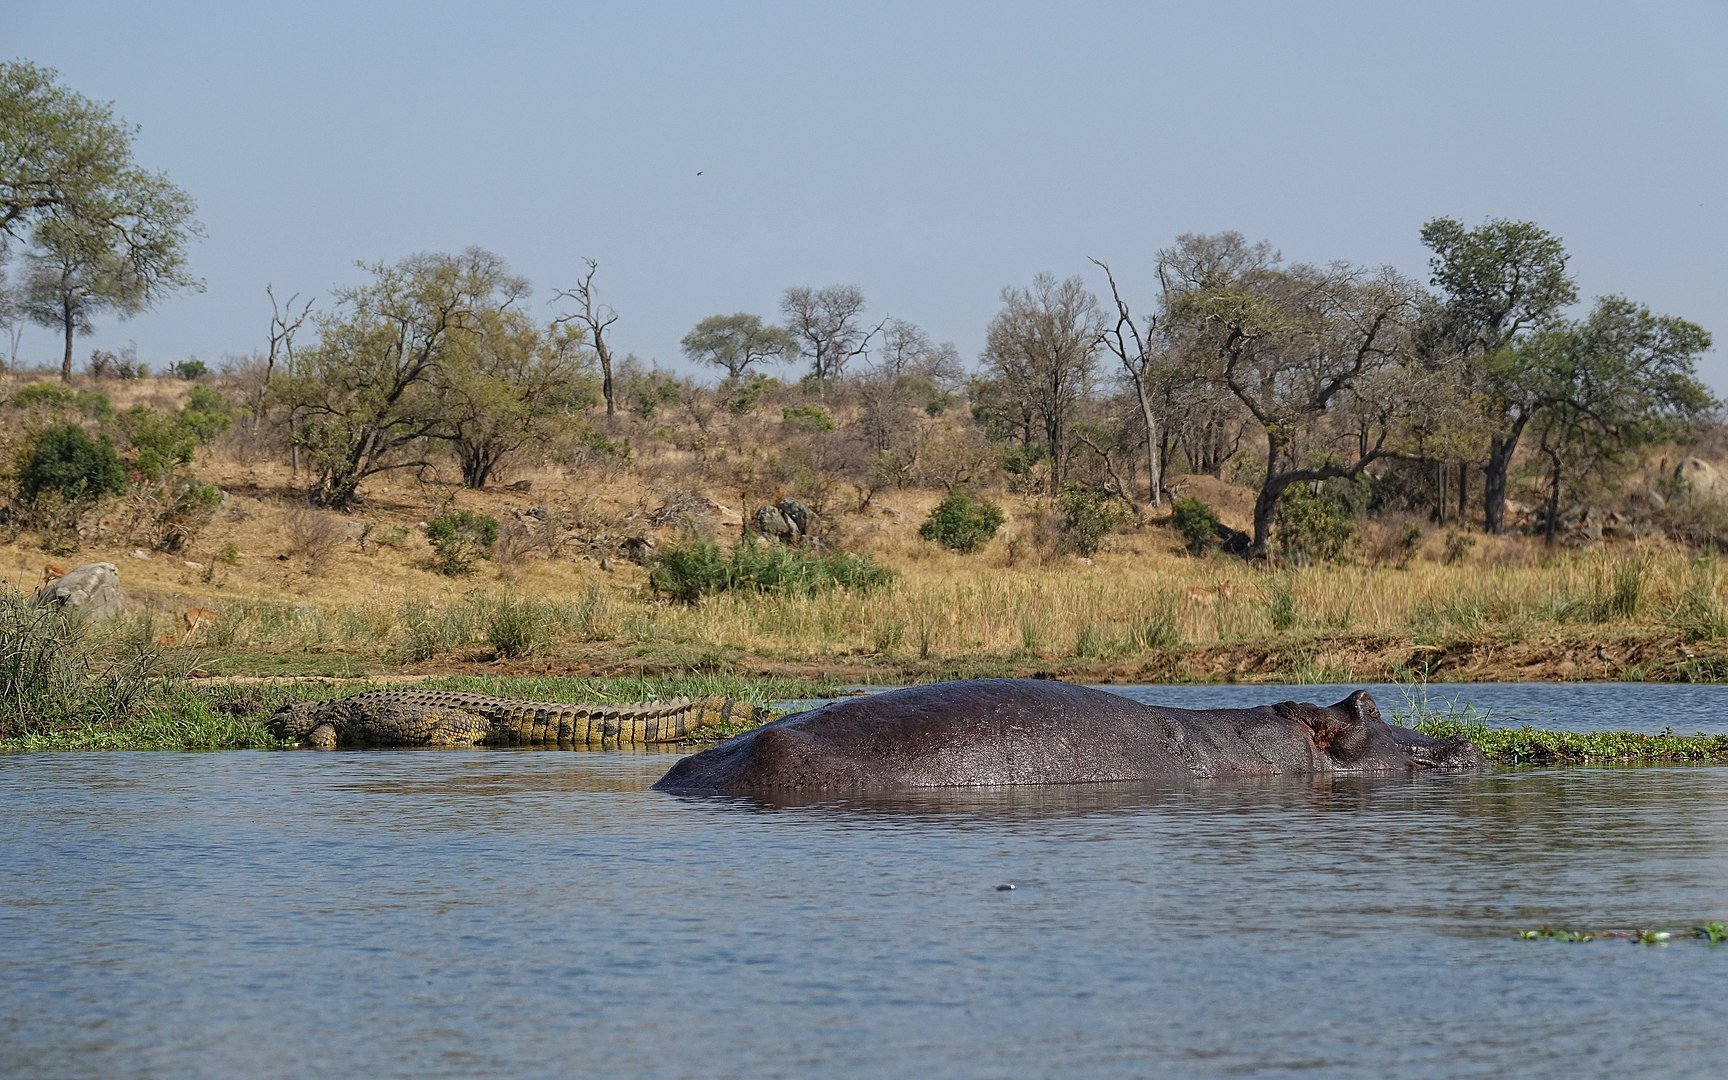 Os hipopótamos passam a maior parte de seus dias semi-submersos (Imagem: Wikimedia Commons)